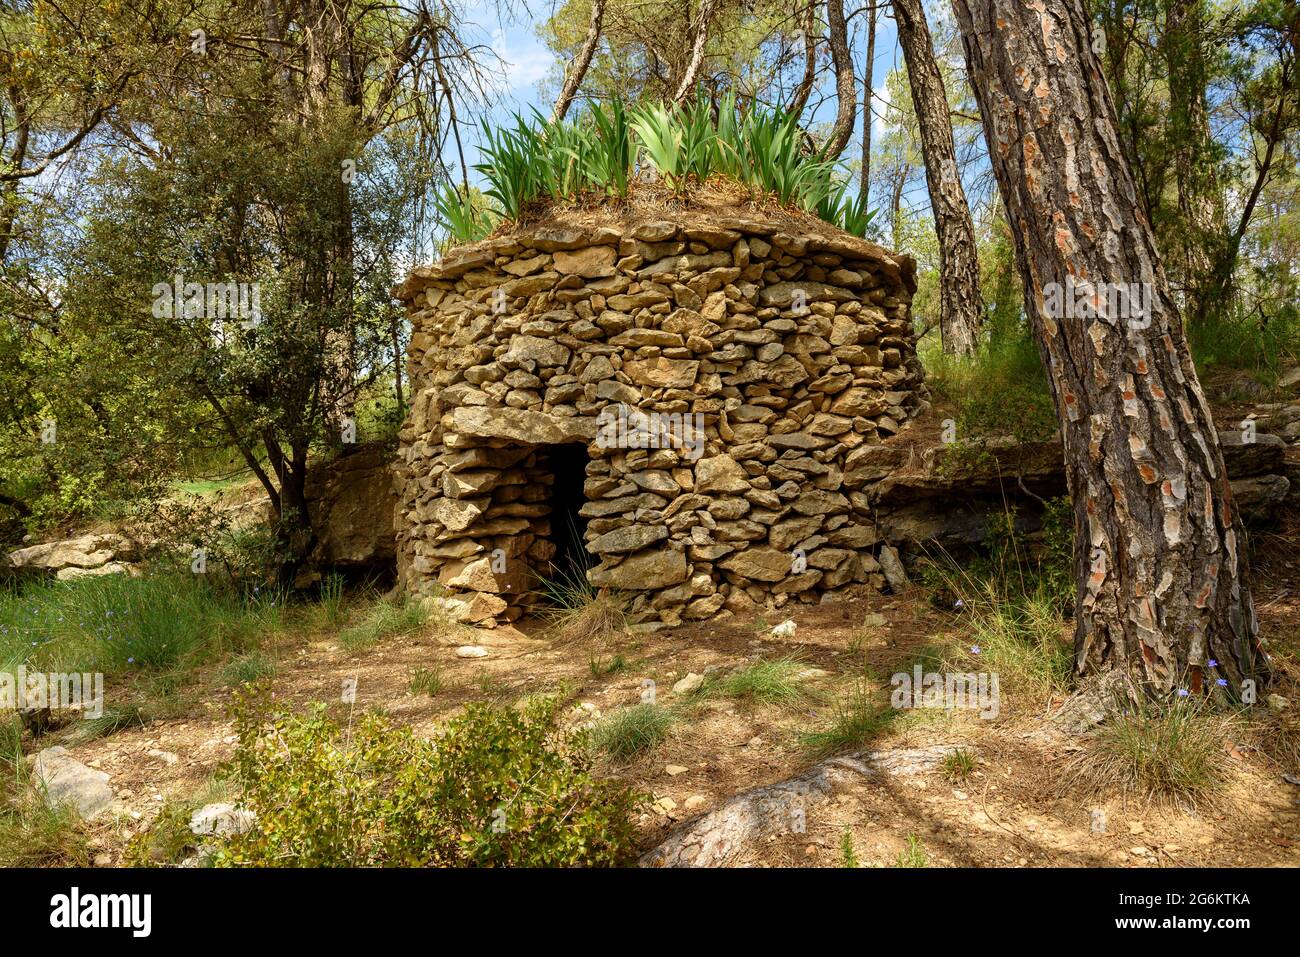 Cabina in pietra a secco accanto al forno di Calç (forno a calce) a Calders (Moianès, Barcellona, Catalogna, Spagna) ESP: Barraca de piedra seca en Calders (España) Foto Stock